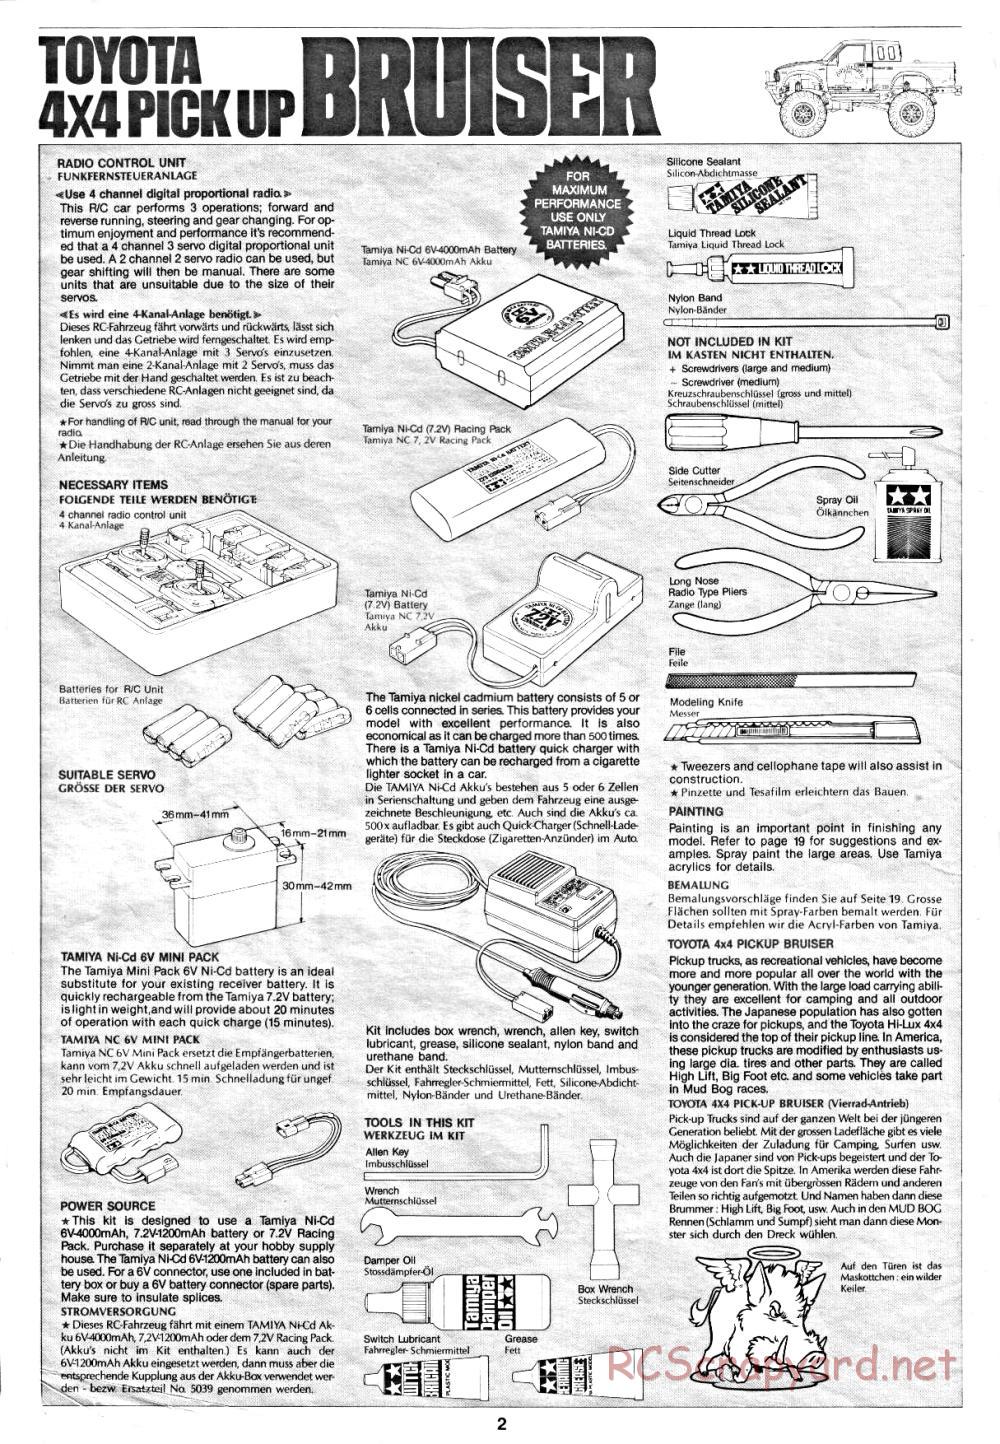 Tamiya - Toyota 4x4 Pick-Up Bruiser - 58048 - Manual - Page 2